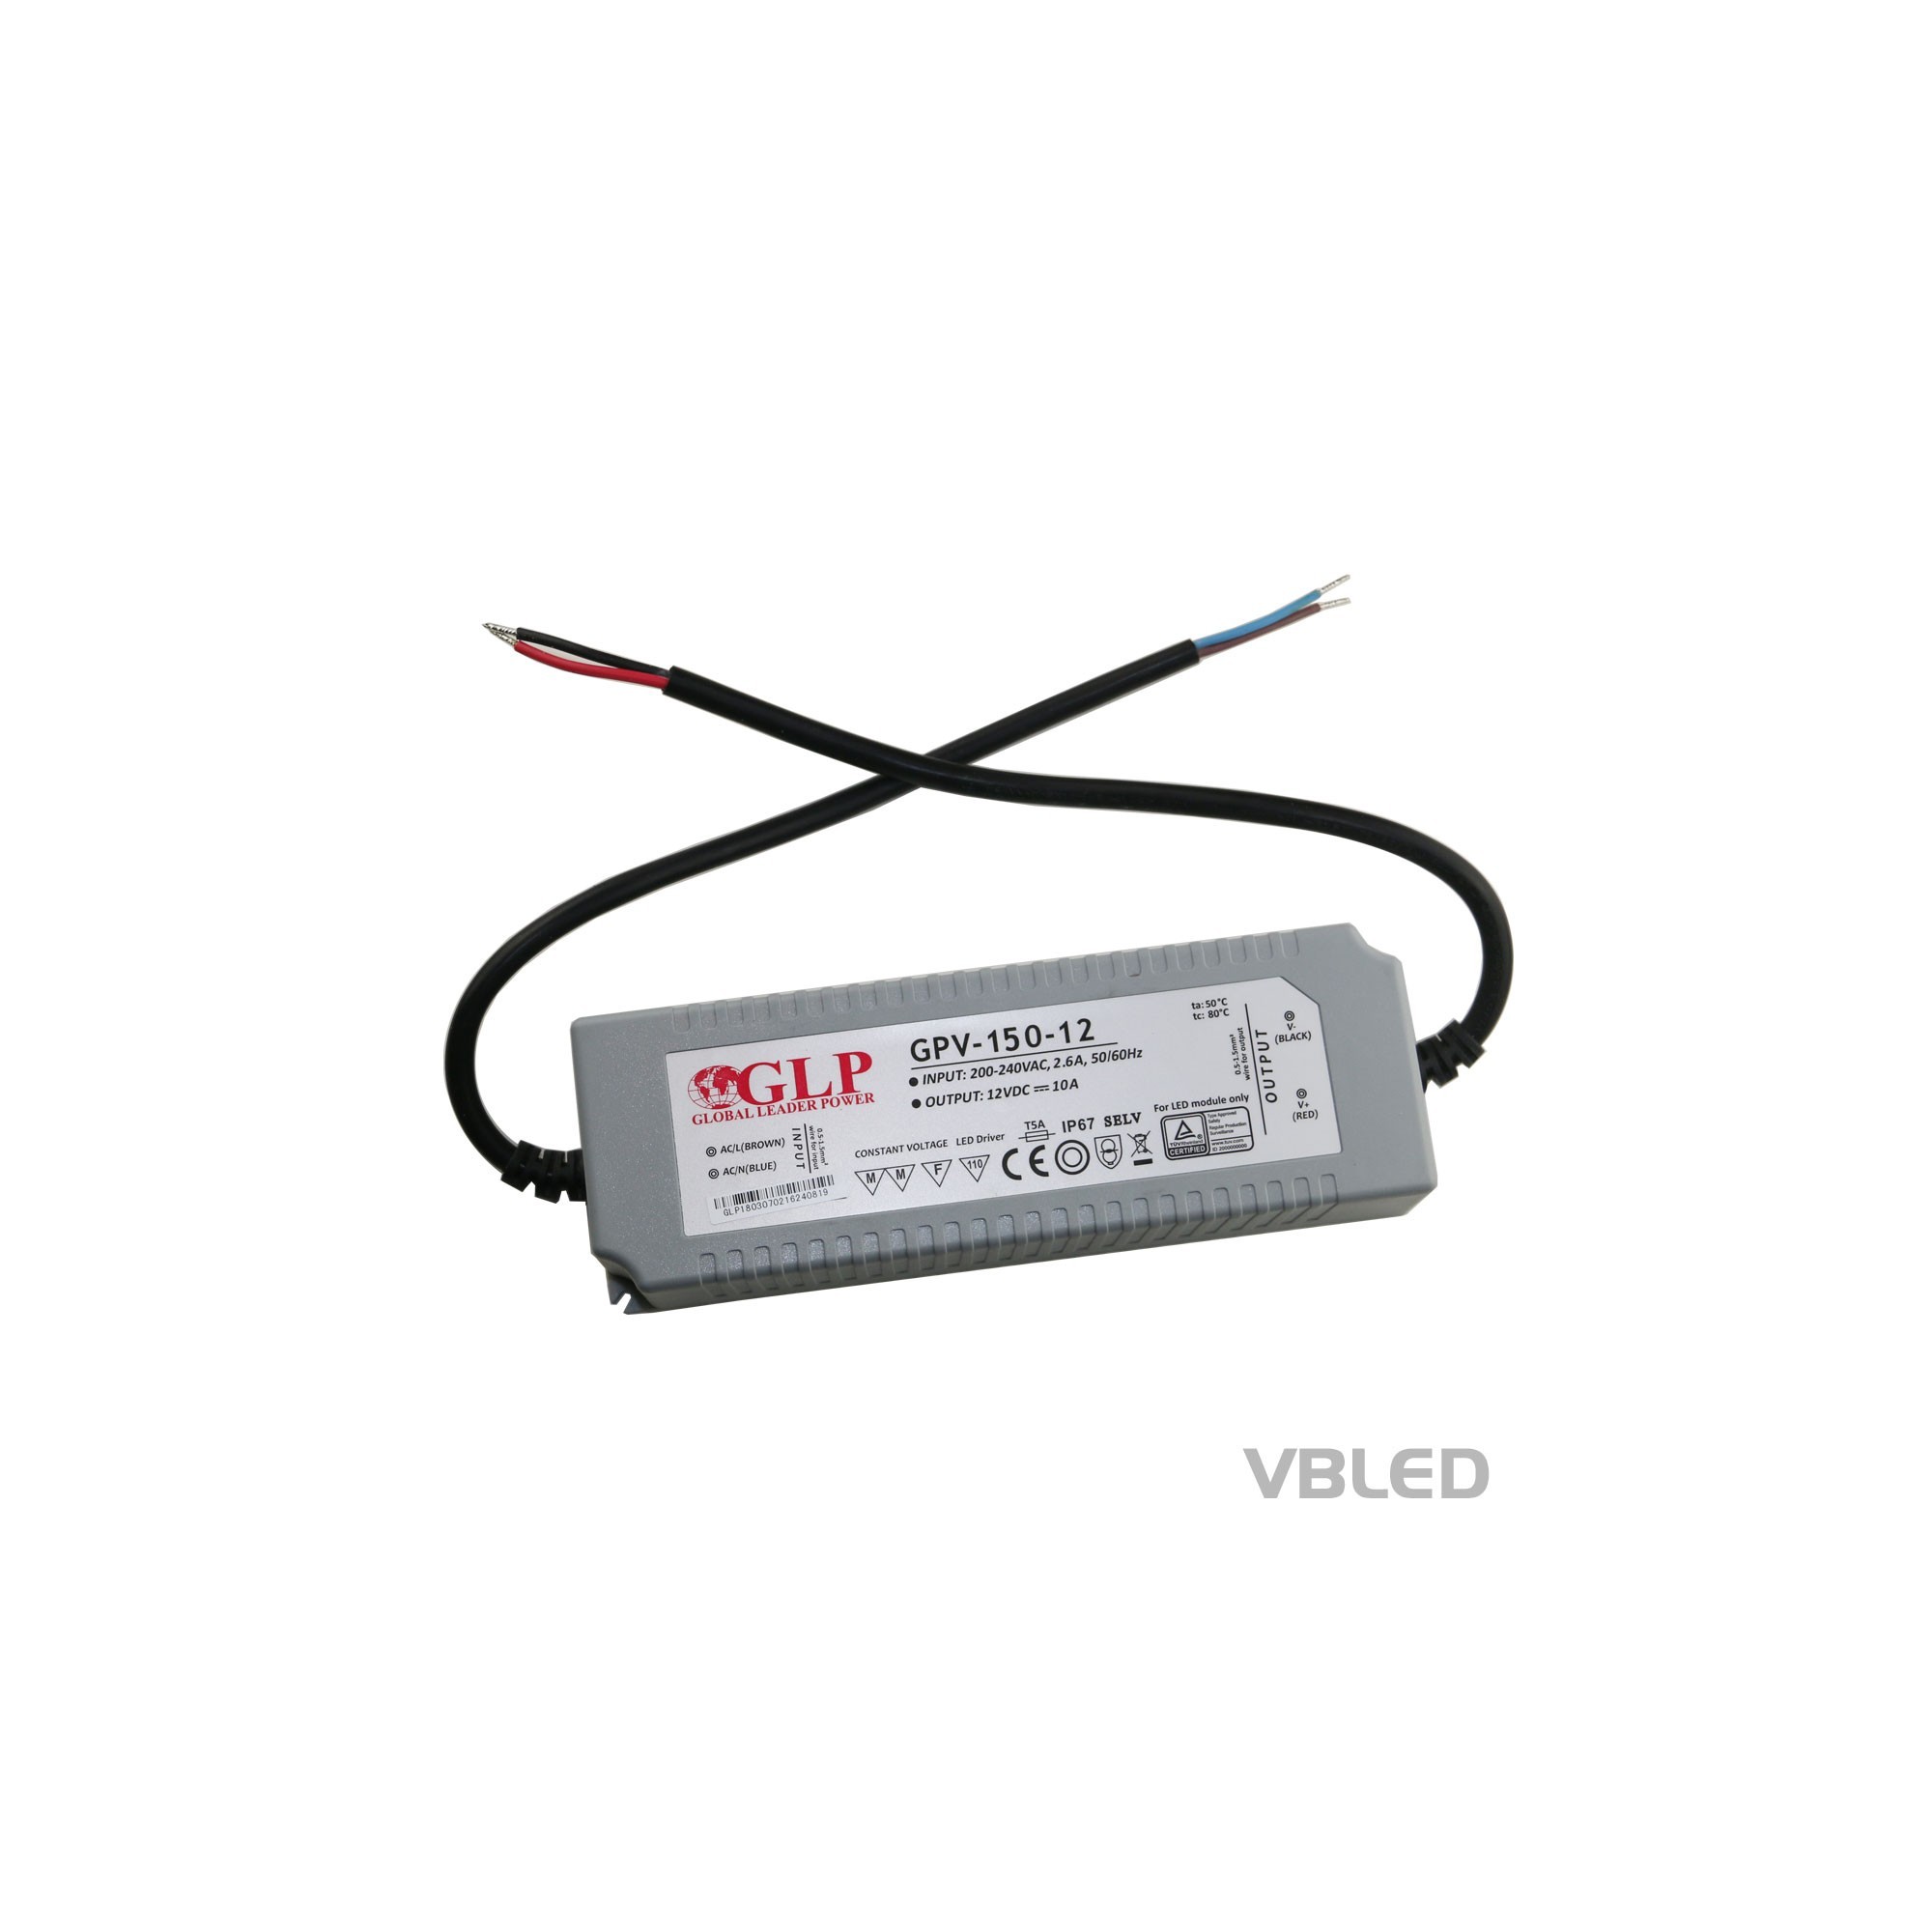 Fuente de alimentación LED de tensión constante / 12V CC / 120W IP67 impermeable